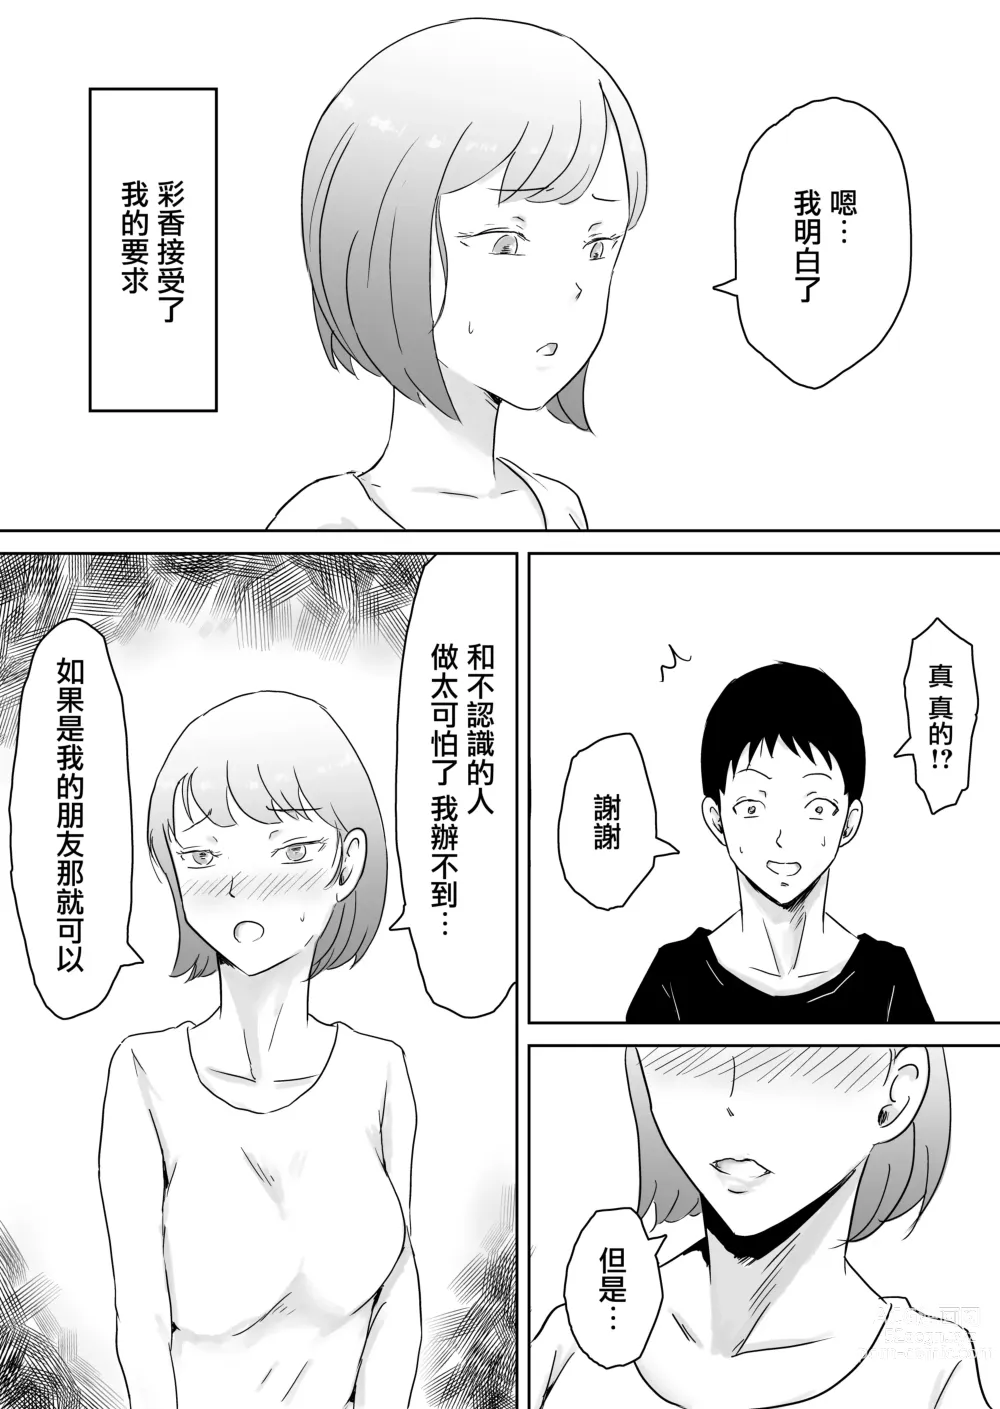 Page 6 of doujinshi 早知不該將妻子拱手讓人